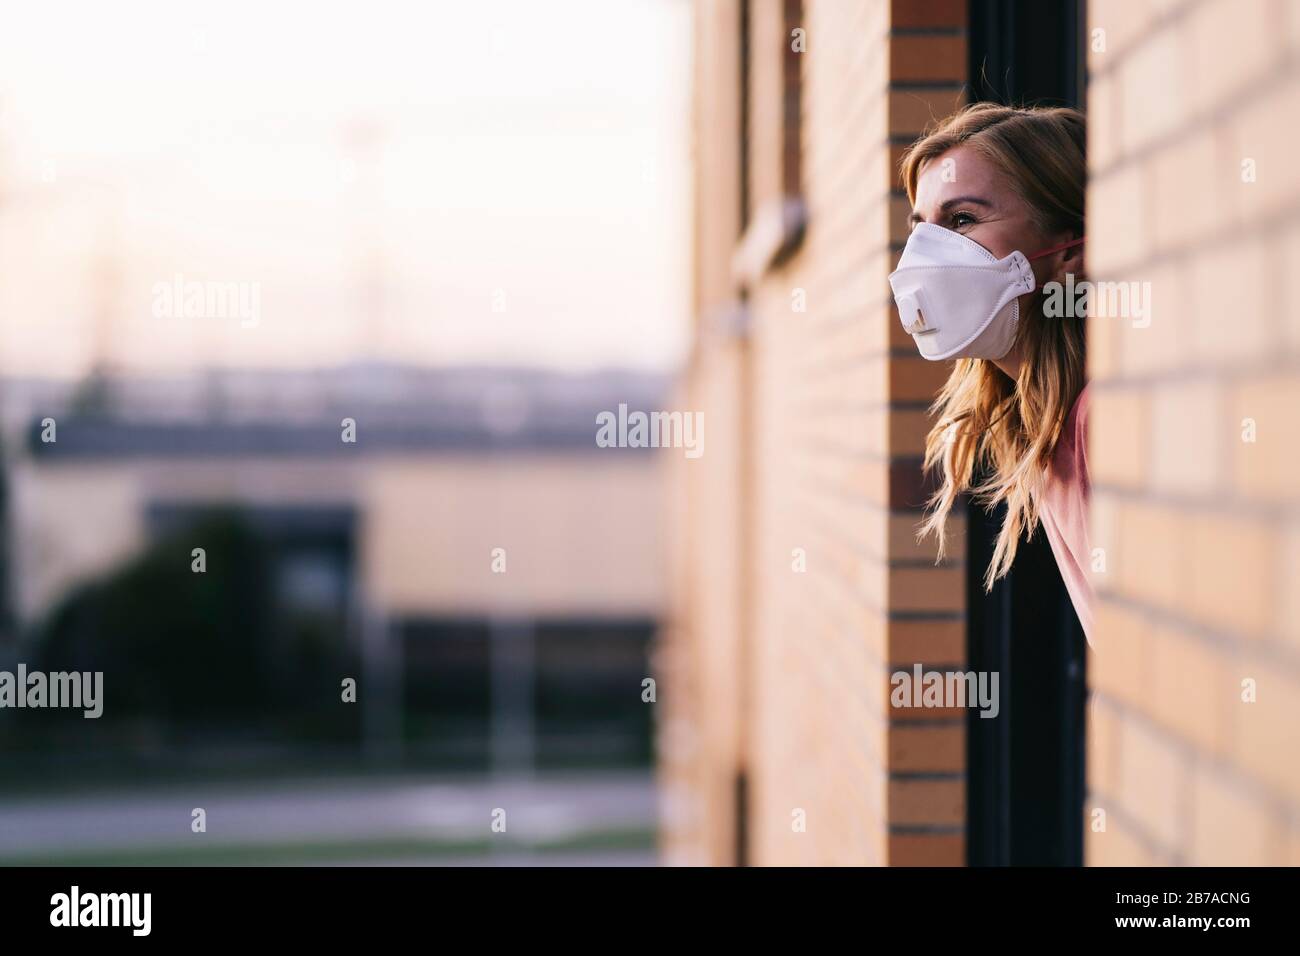 Stockfoto der Frau, die aus dem Hausfenster schaut. Sie trägt eine Schutzmaske zur Vorbeugung gegen einen Virus. Coronavirus Konzept Stockfoto